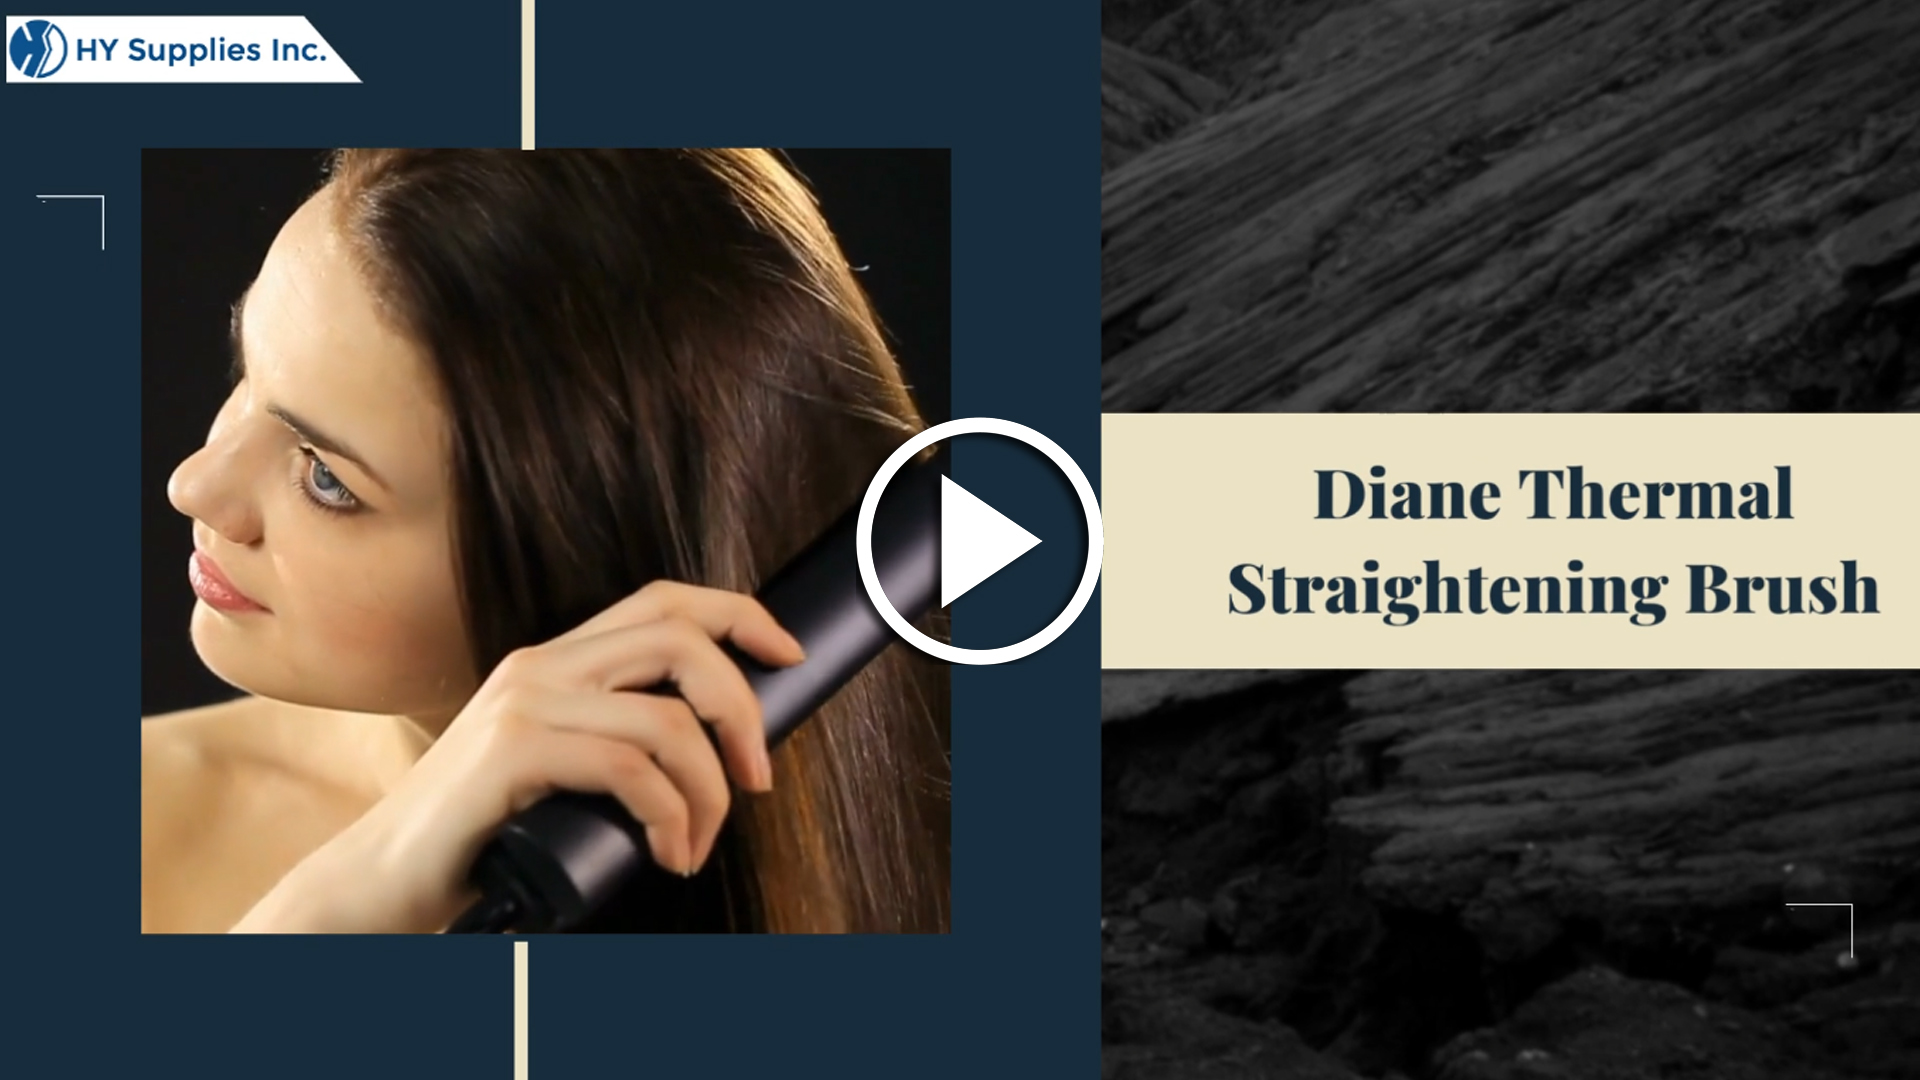 Diane Thermal Straightening Brush